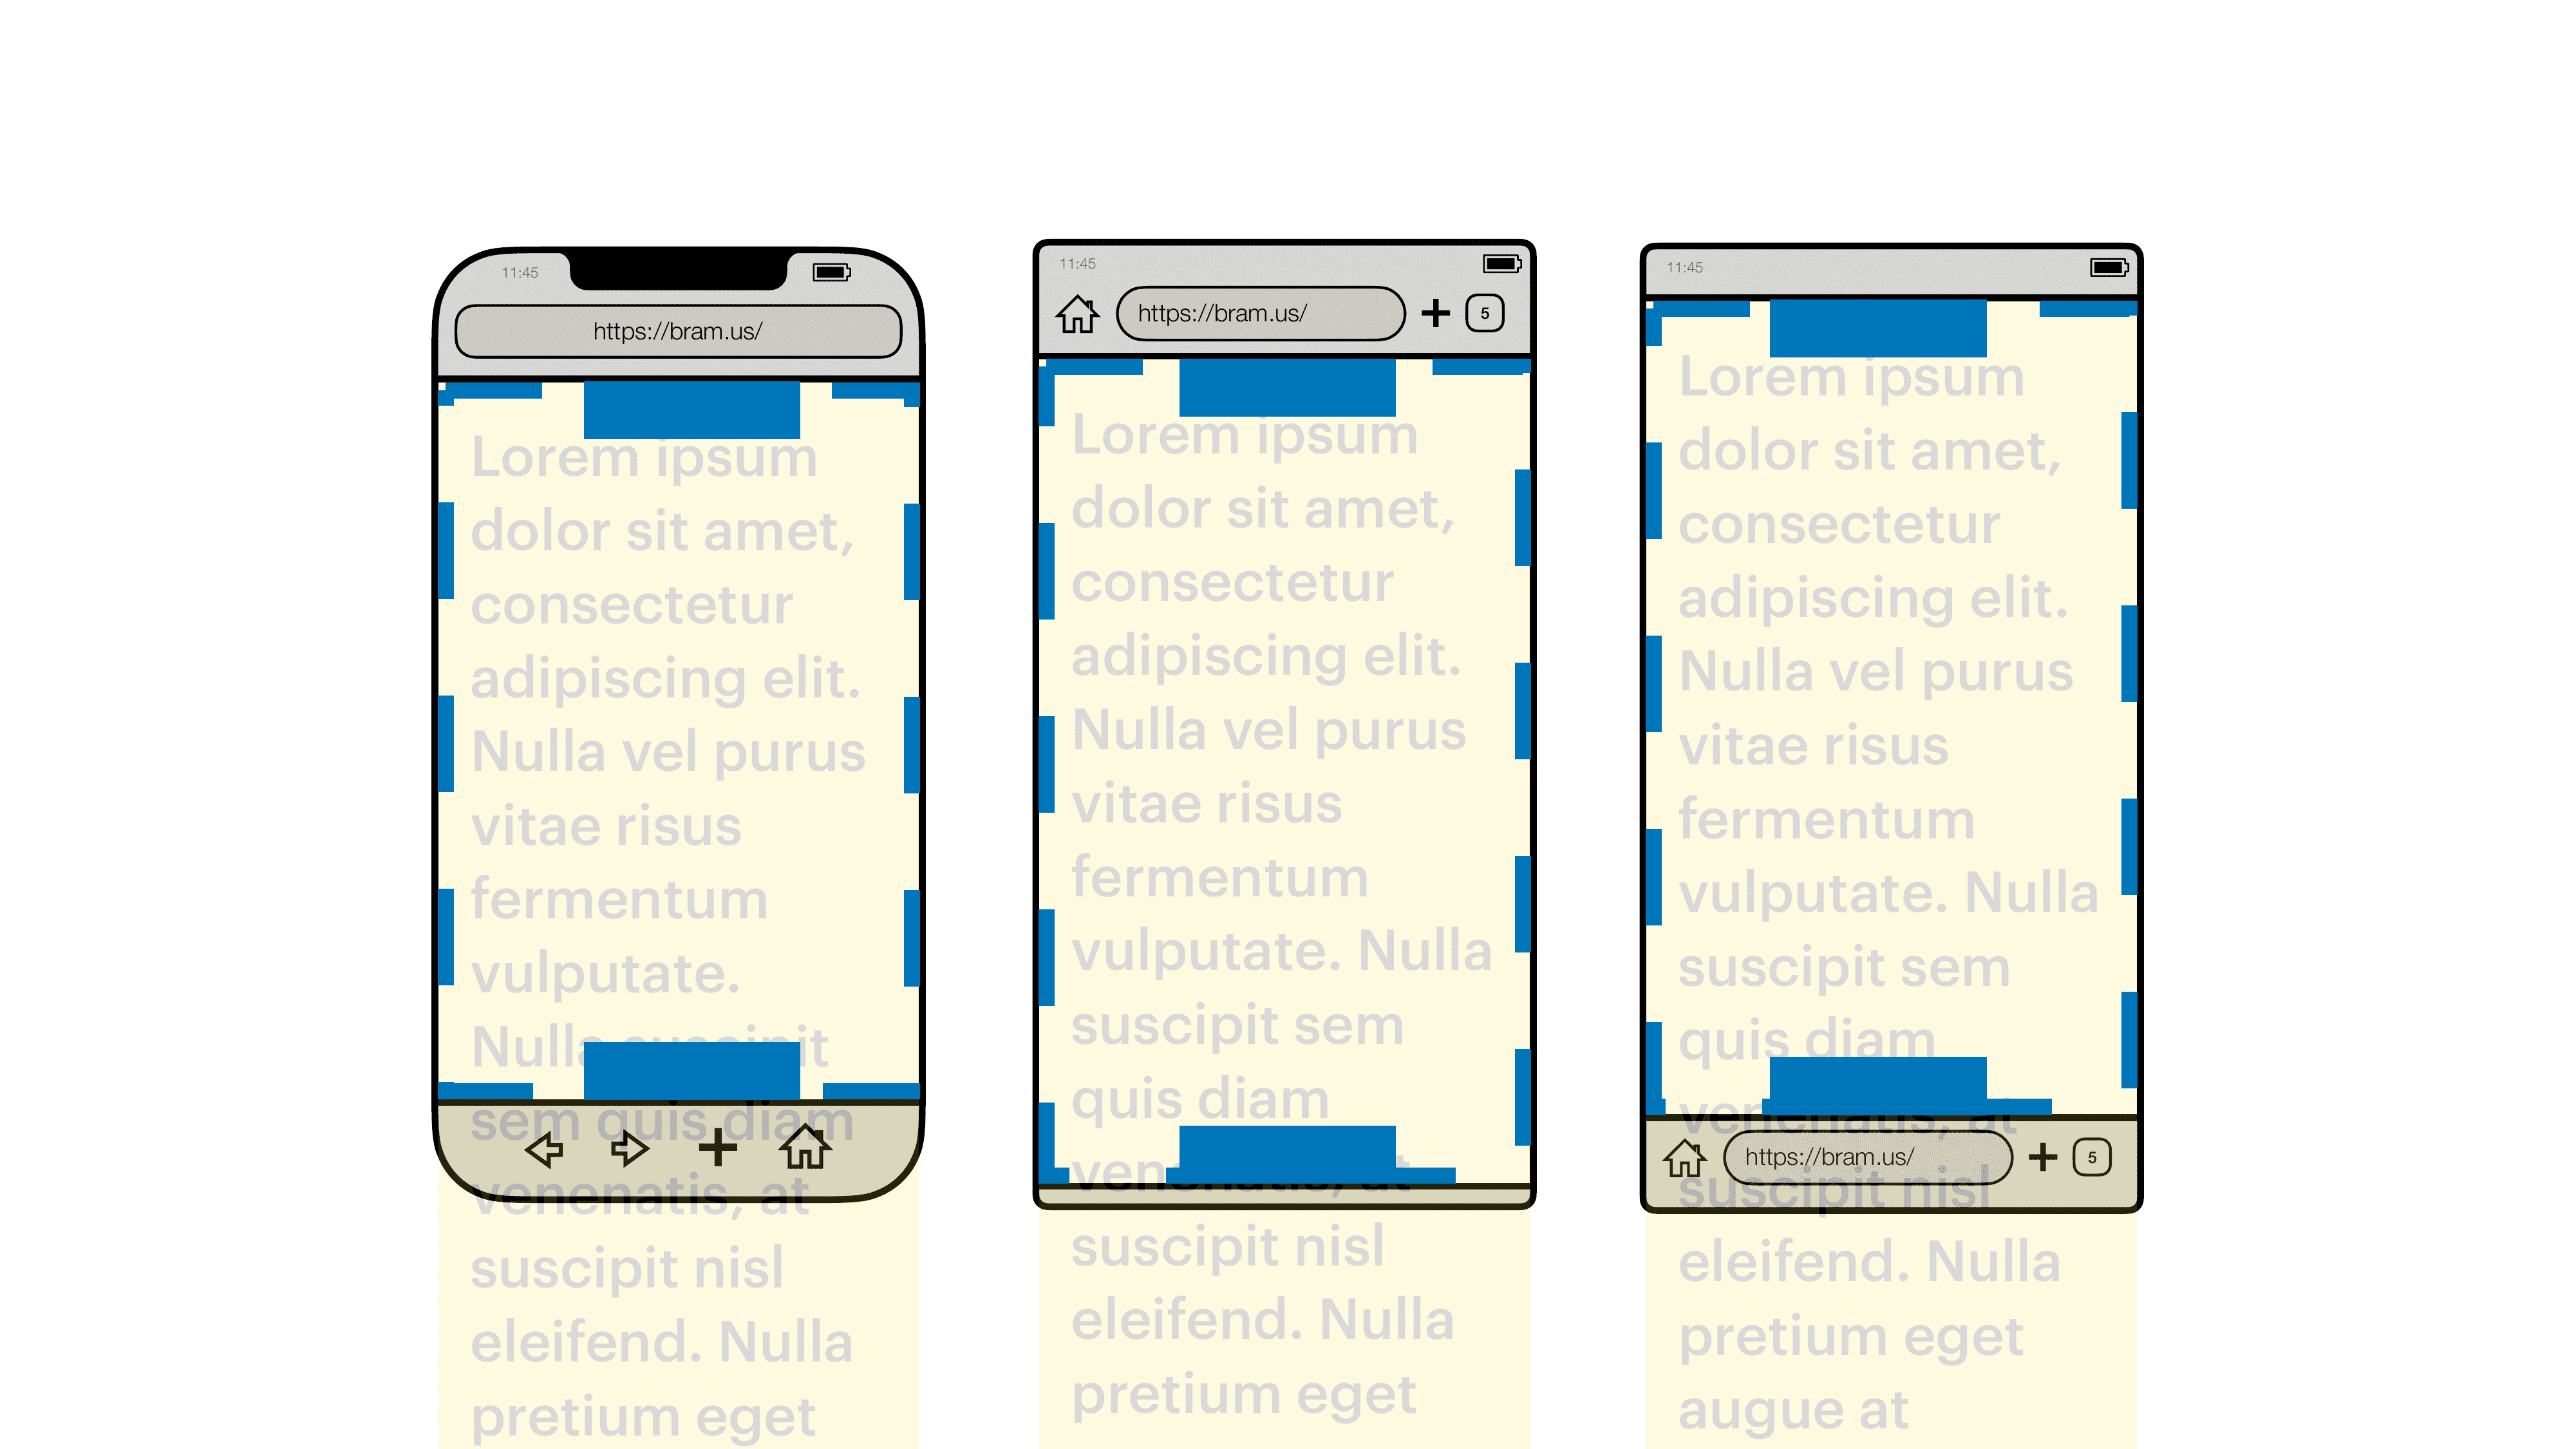 תצוגה חזותית של נקודת המבט של הפריסה (קו מתאר כחול) בדפדפנים לנייד, כשבכל אחת מהן יש שני רכיבים שהפורמט שלהם הוא &#39;מיקום: קבוע&#39; (תיבות כחולות).